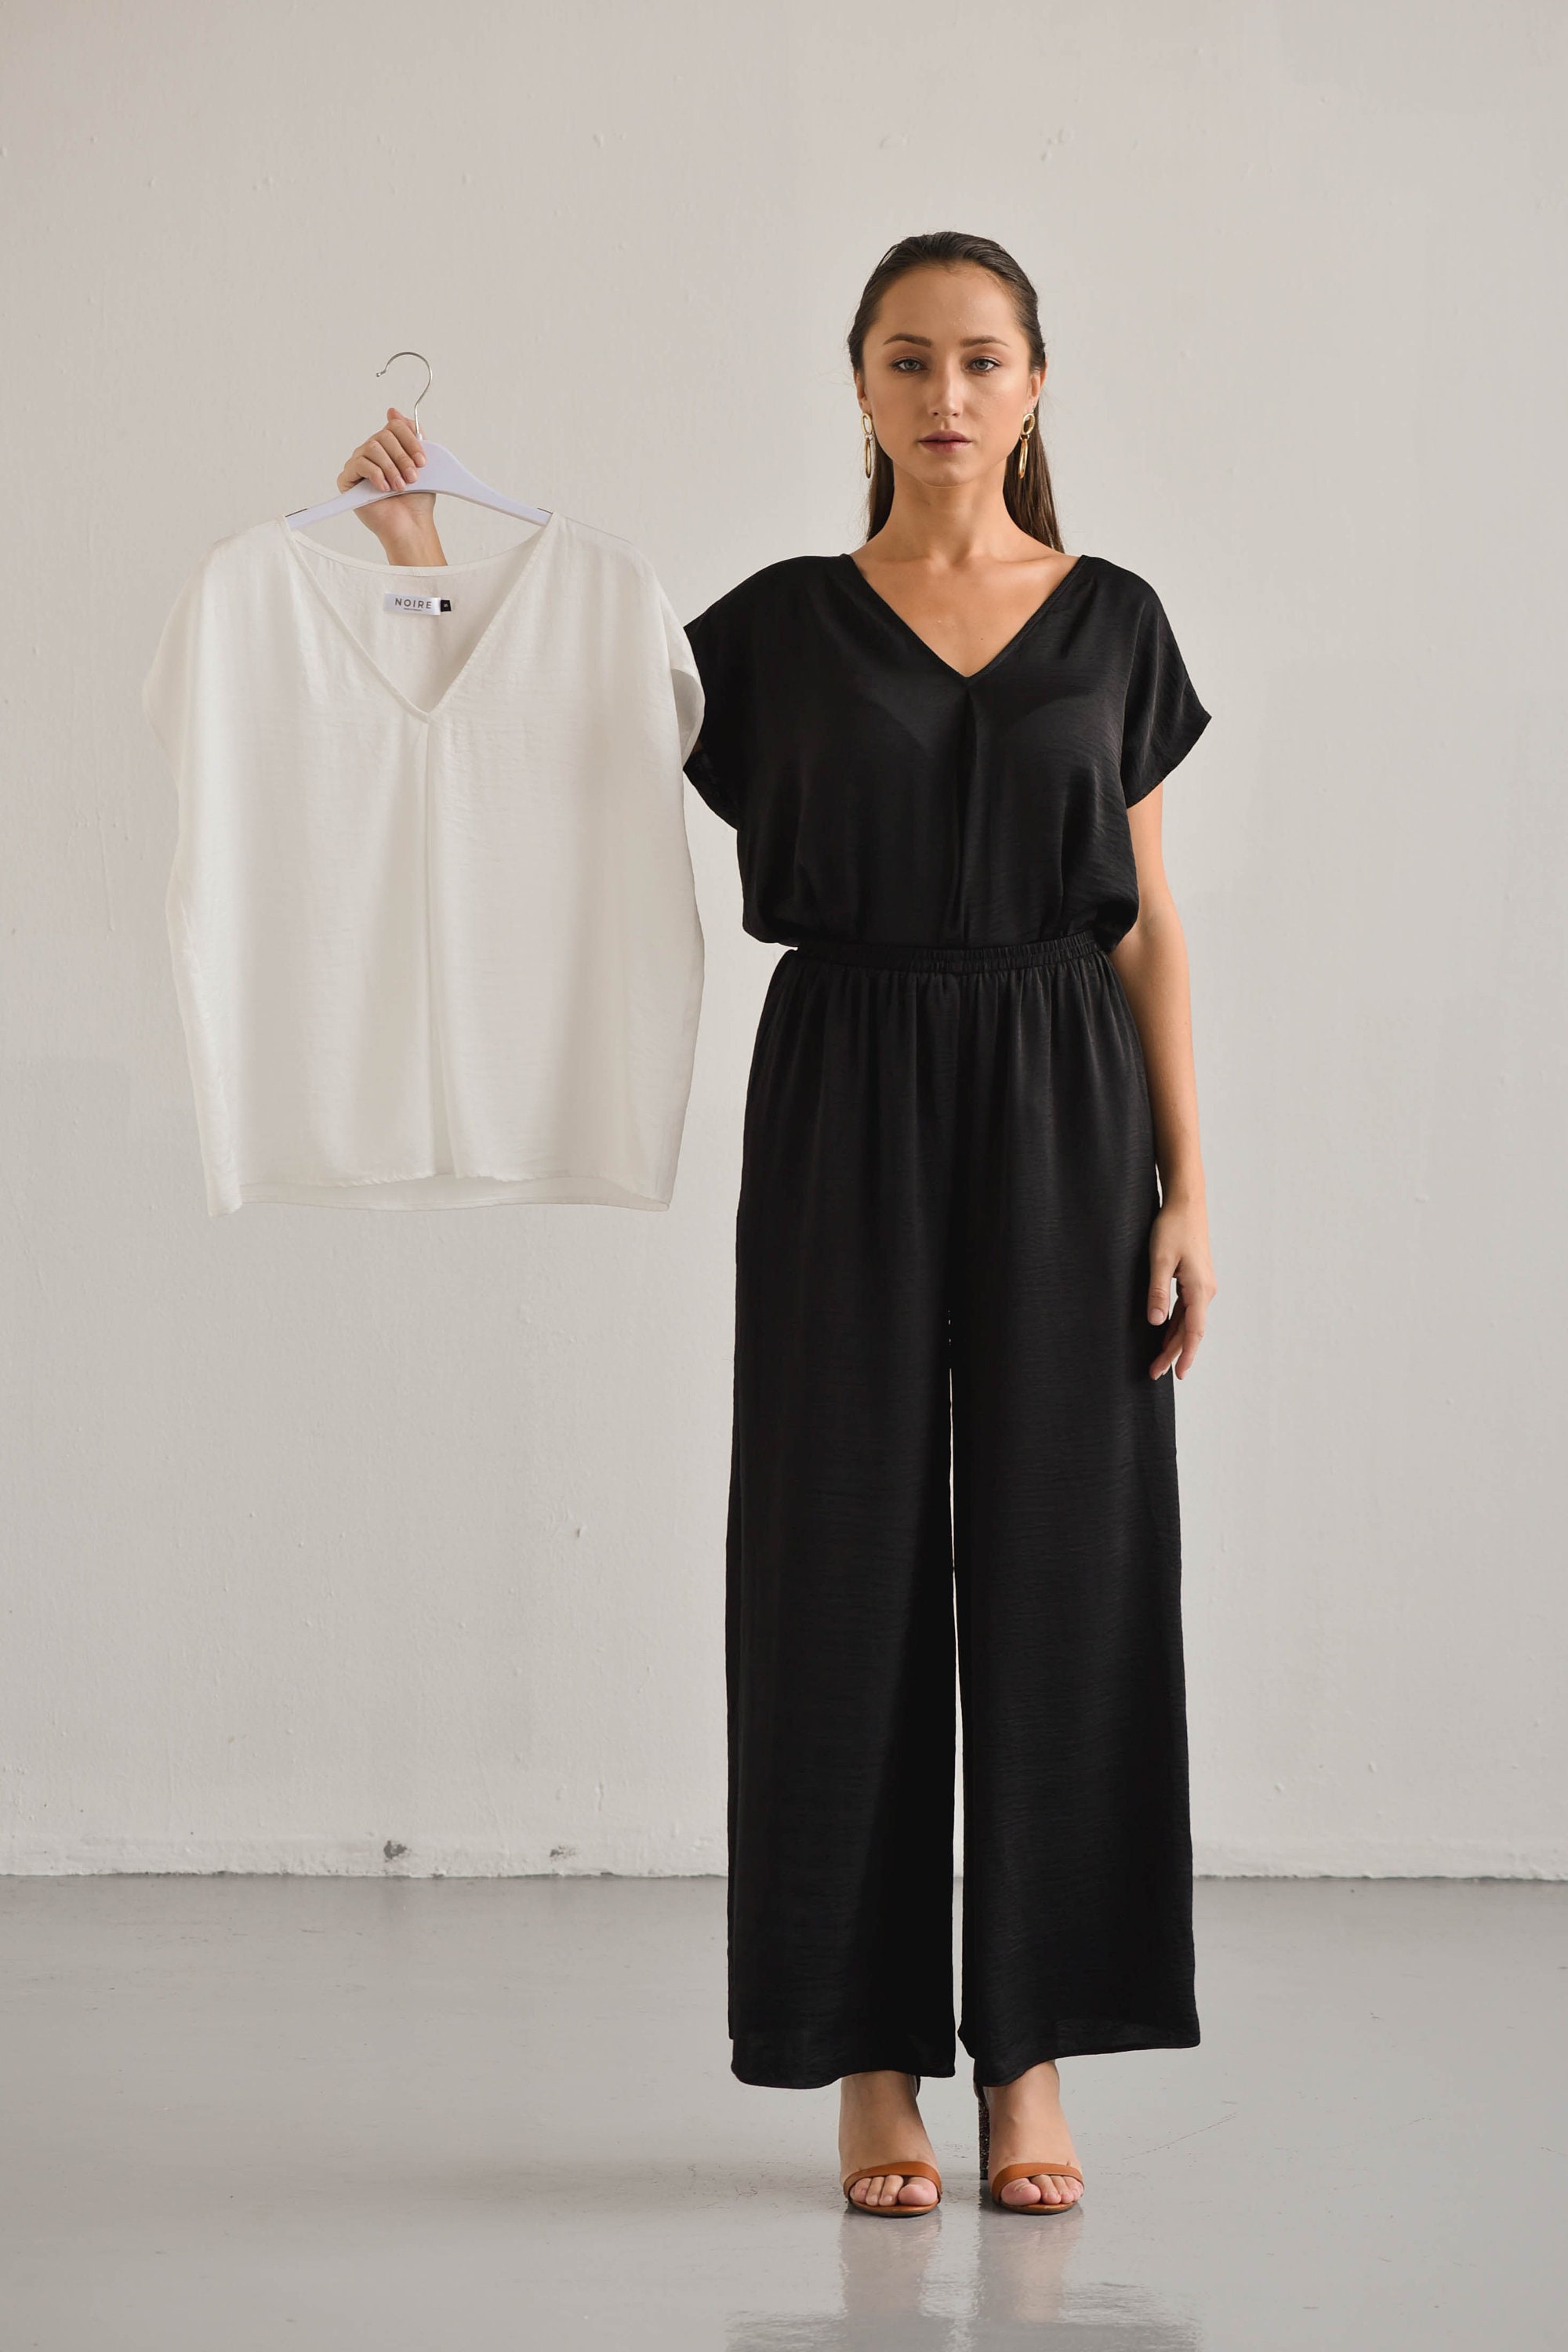 Ines Simple Silk Top Short Sleeves Blouse Minimalist Black | Etsy